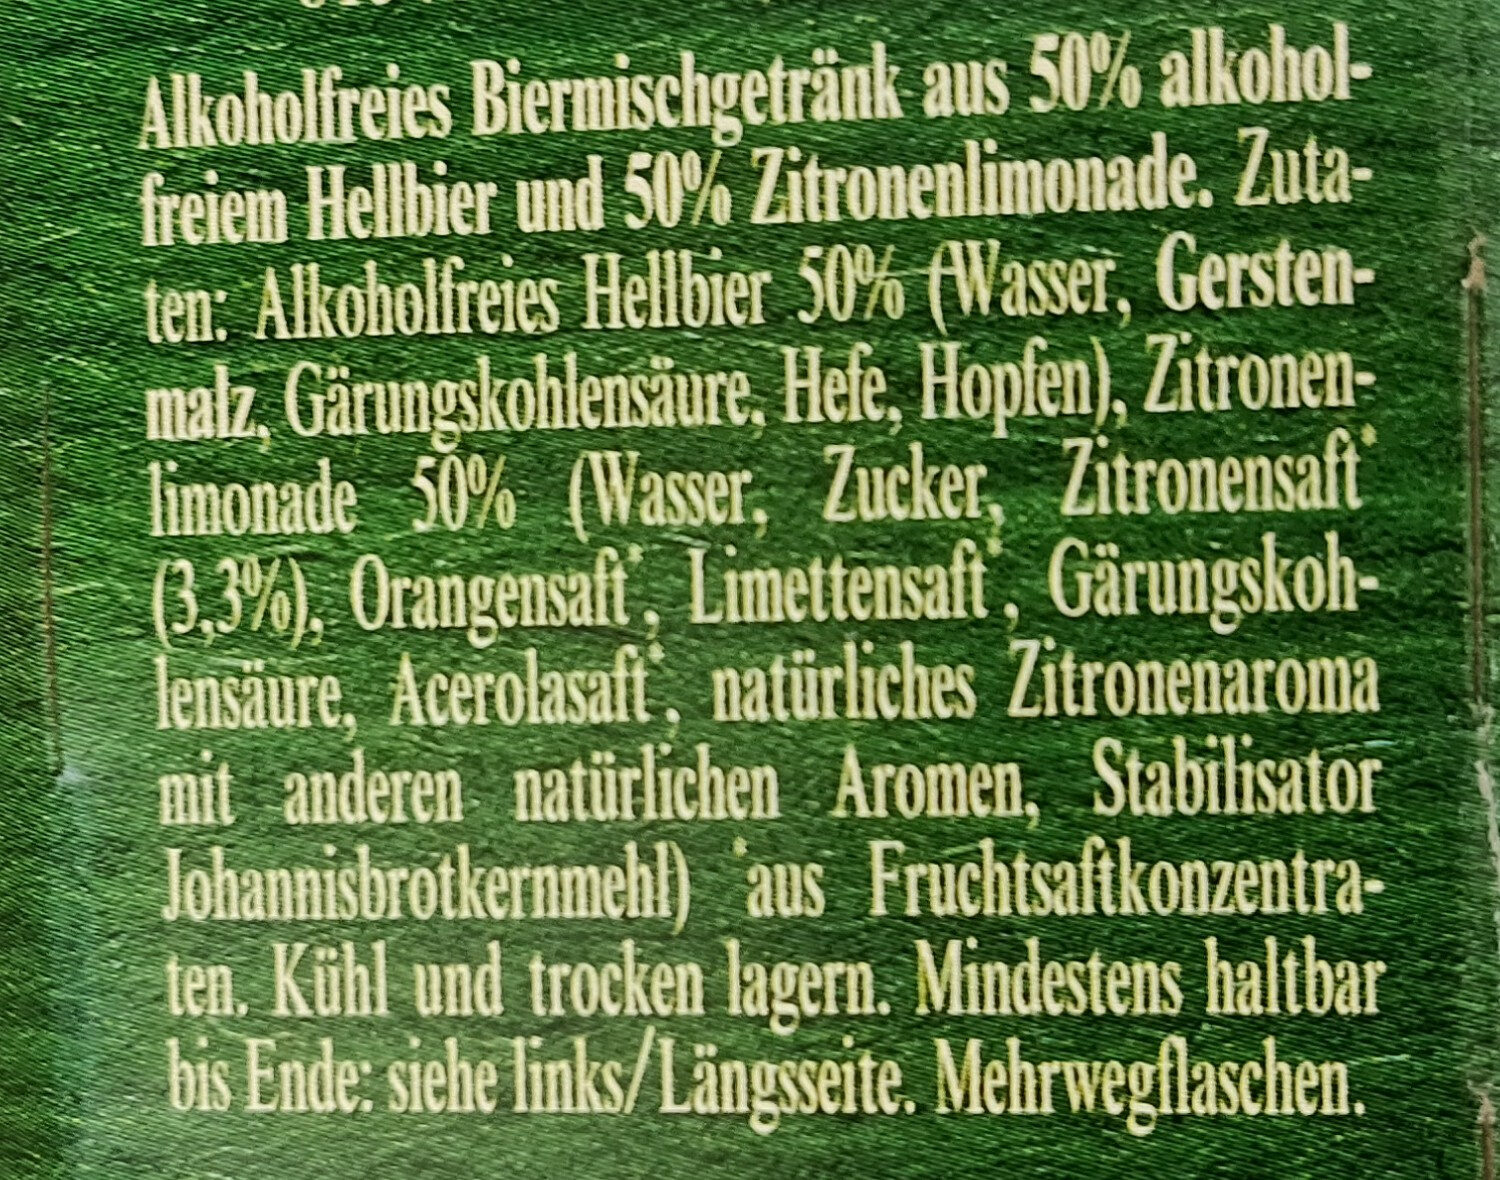 Natur Radler alkoholfrei - Ingredients - de